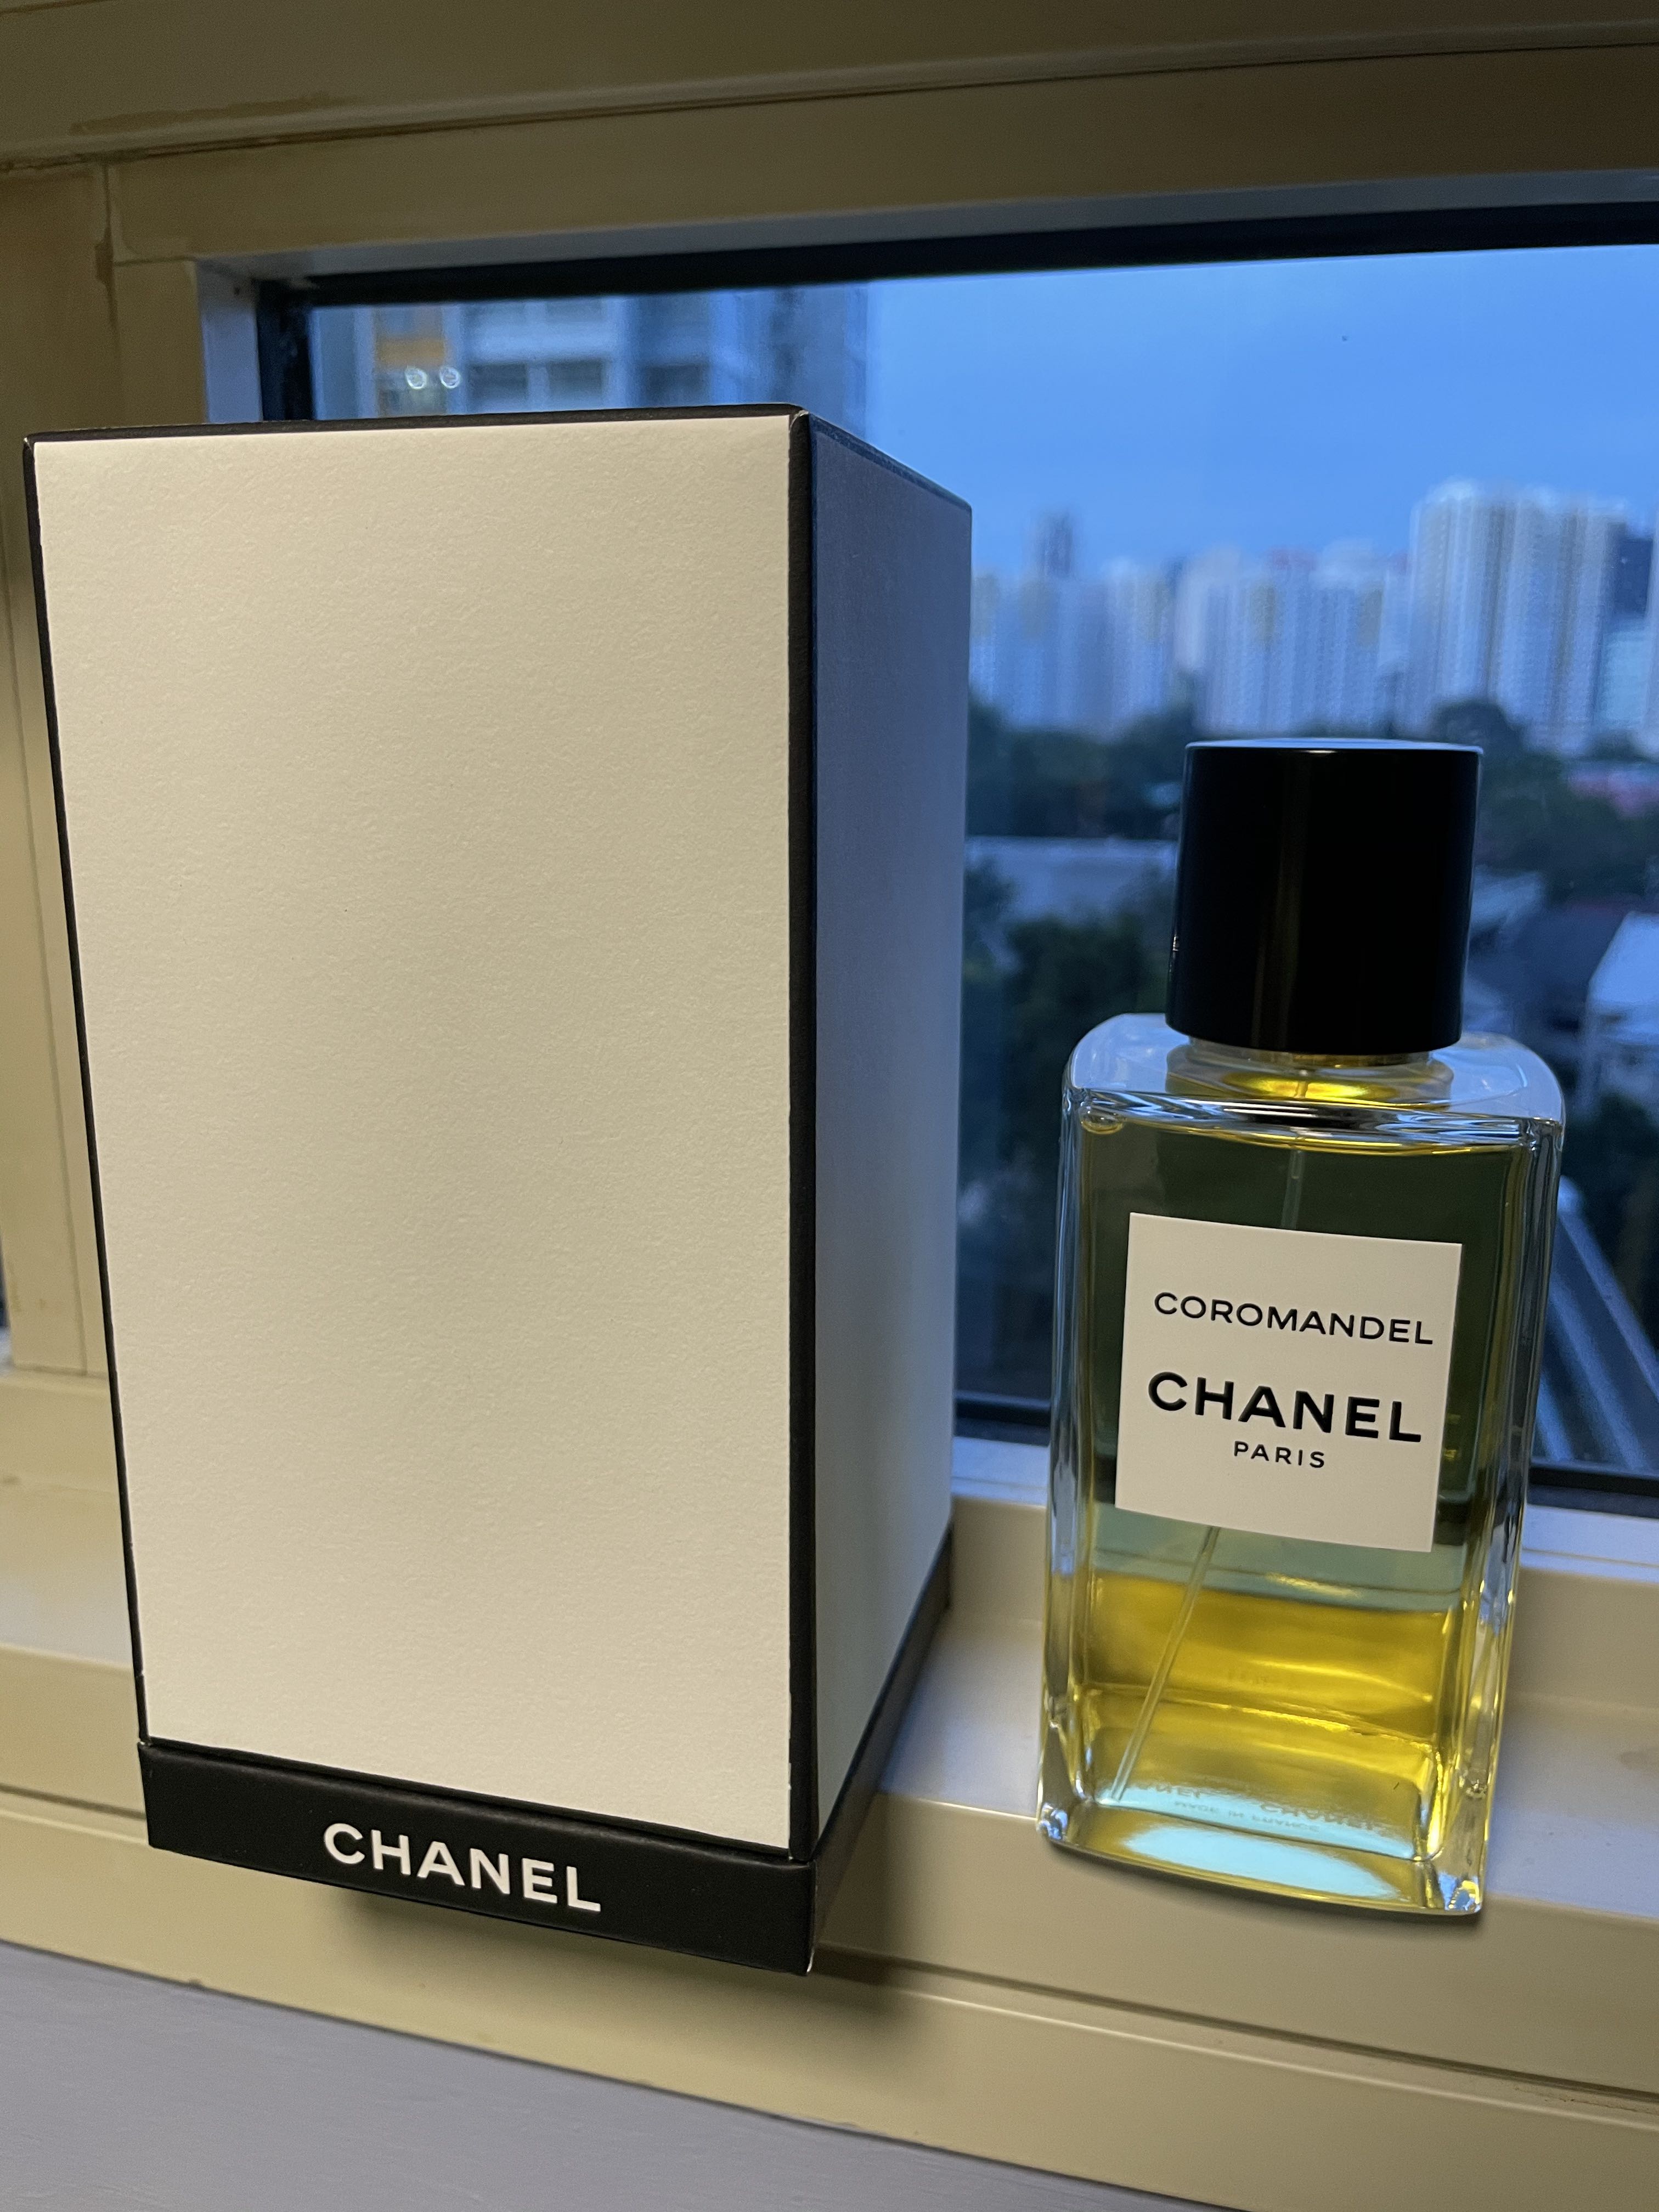 Chanel Les Exclusifs de Chanel Coromandel - Eau de Parfum